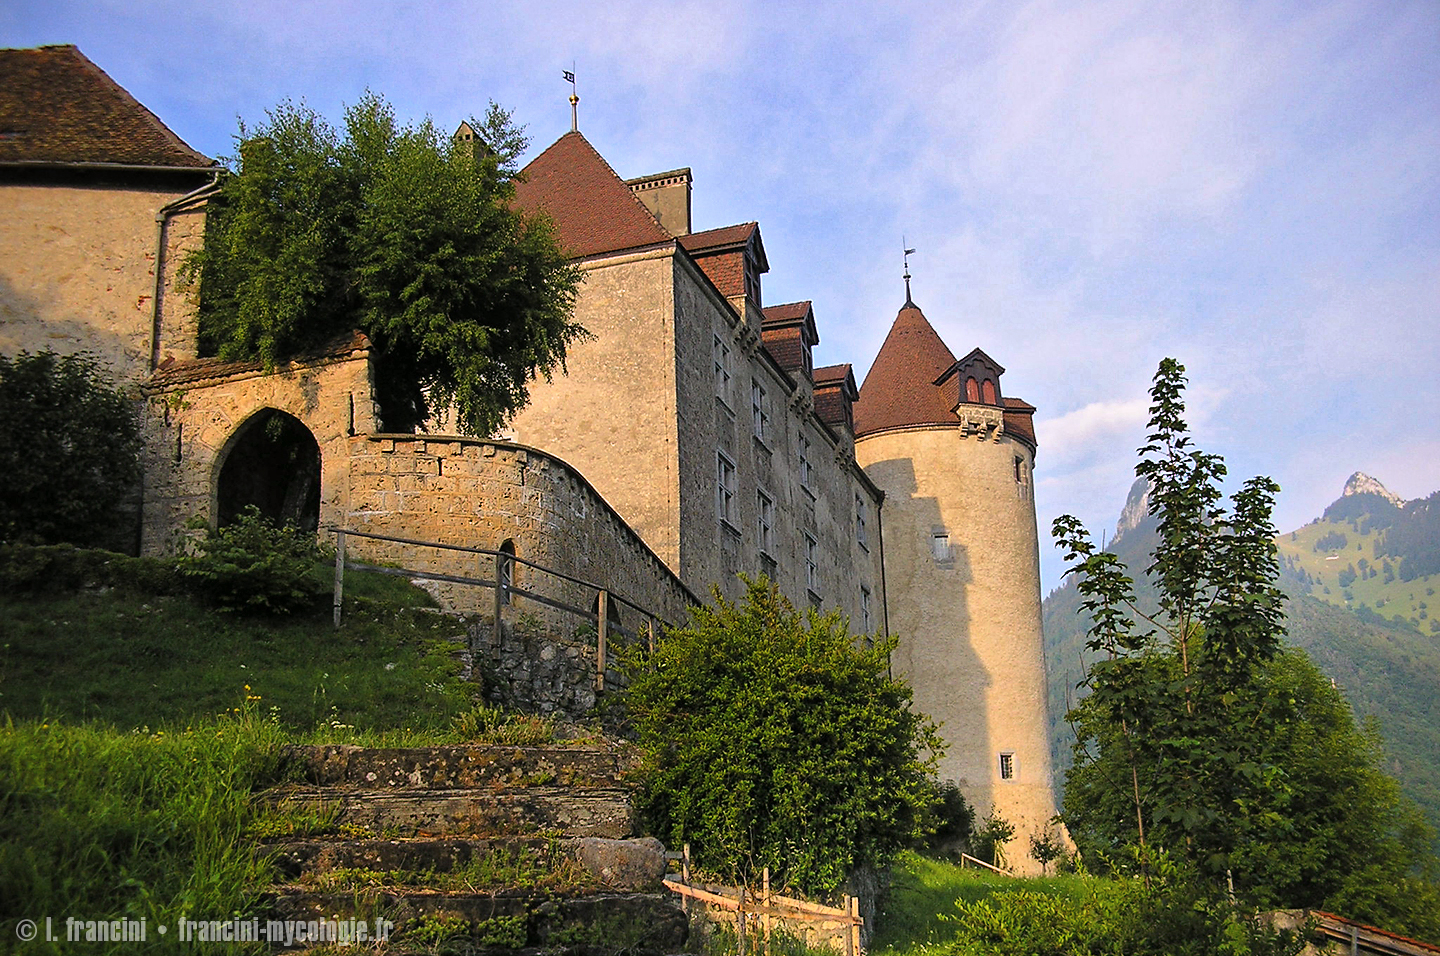 Chateau de Gruyeres